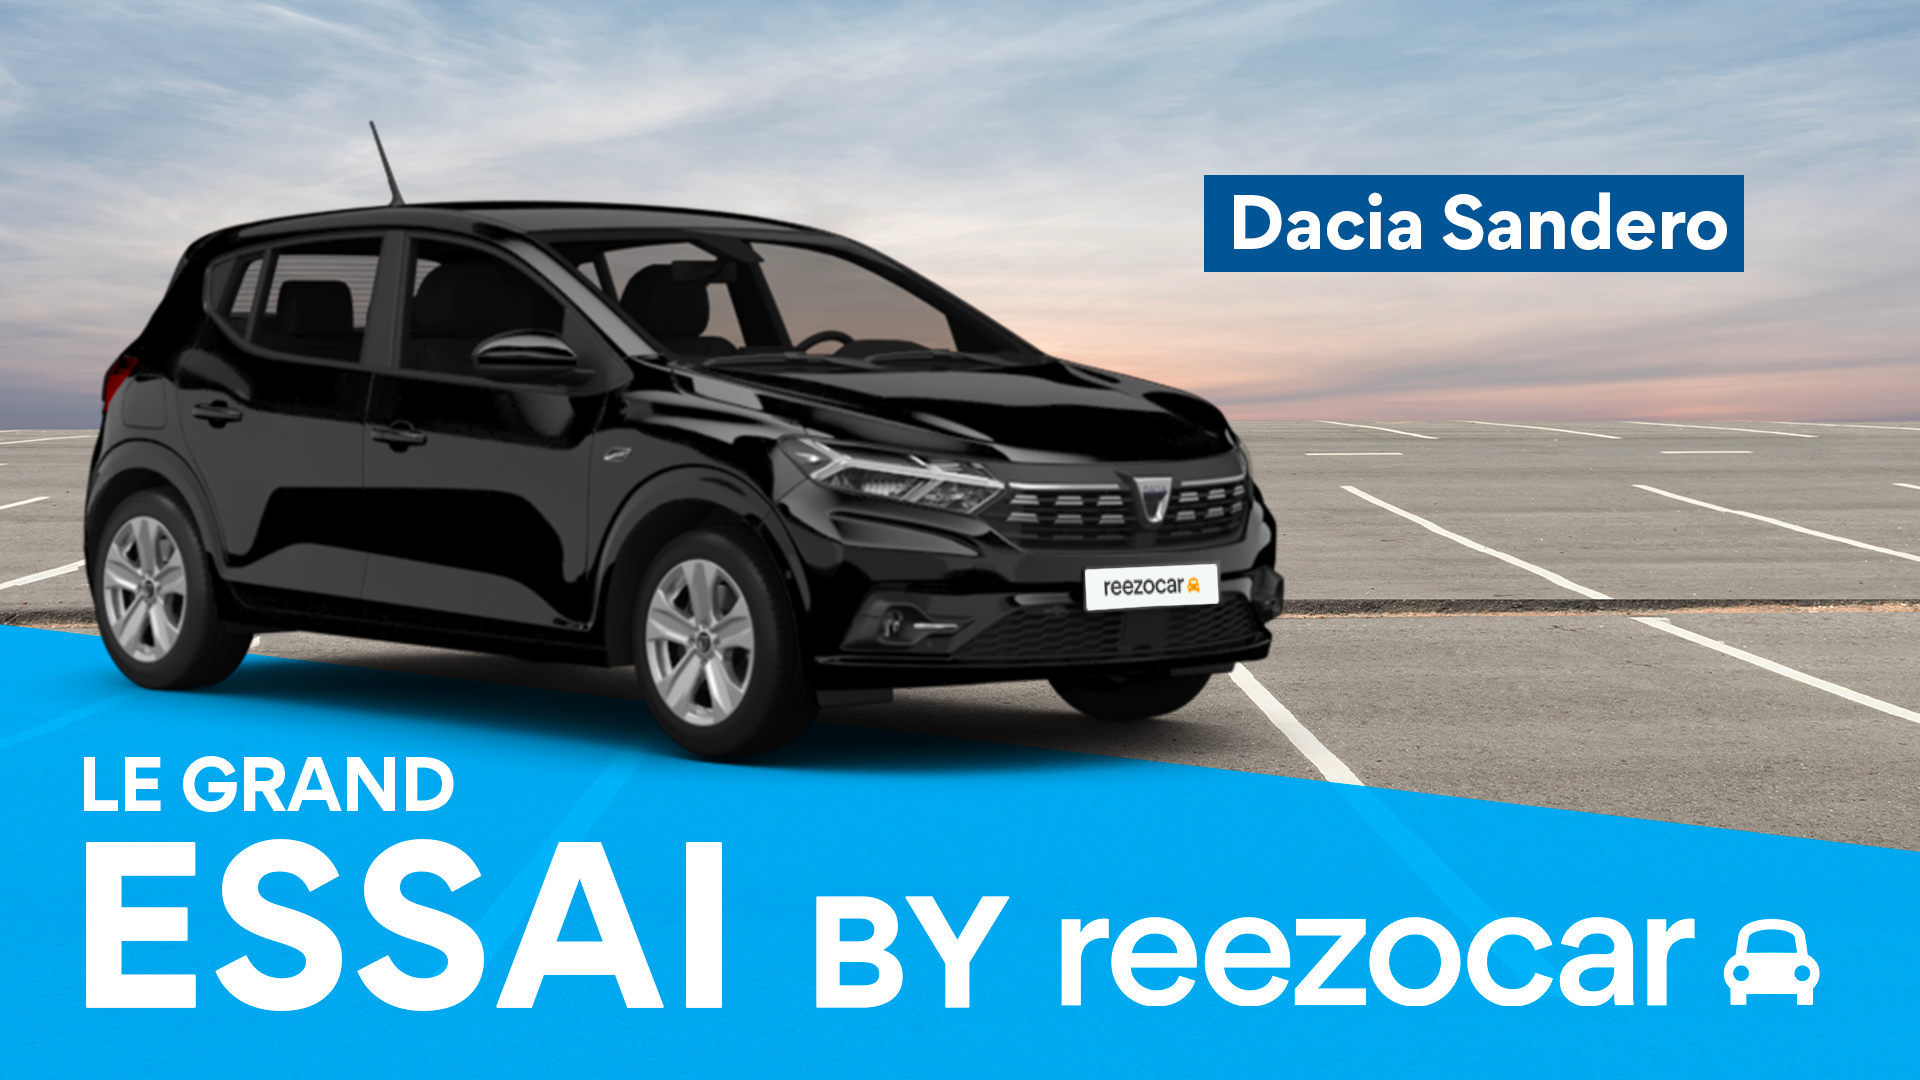 Essai nouvelle Dacia Sandero : décomplexée et généreuse